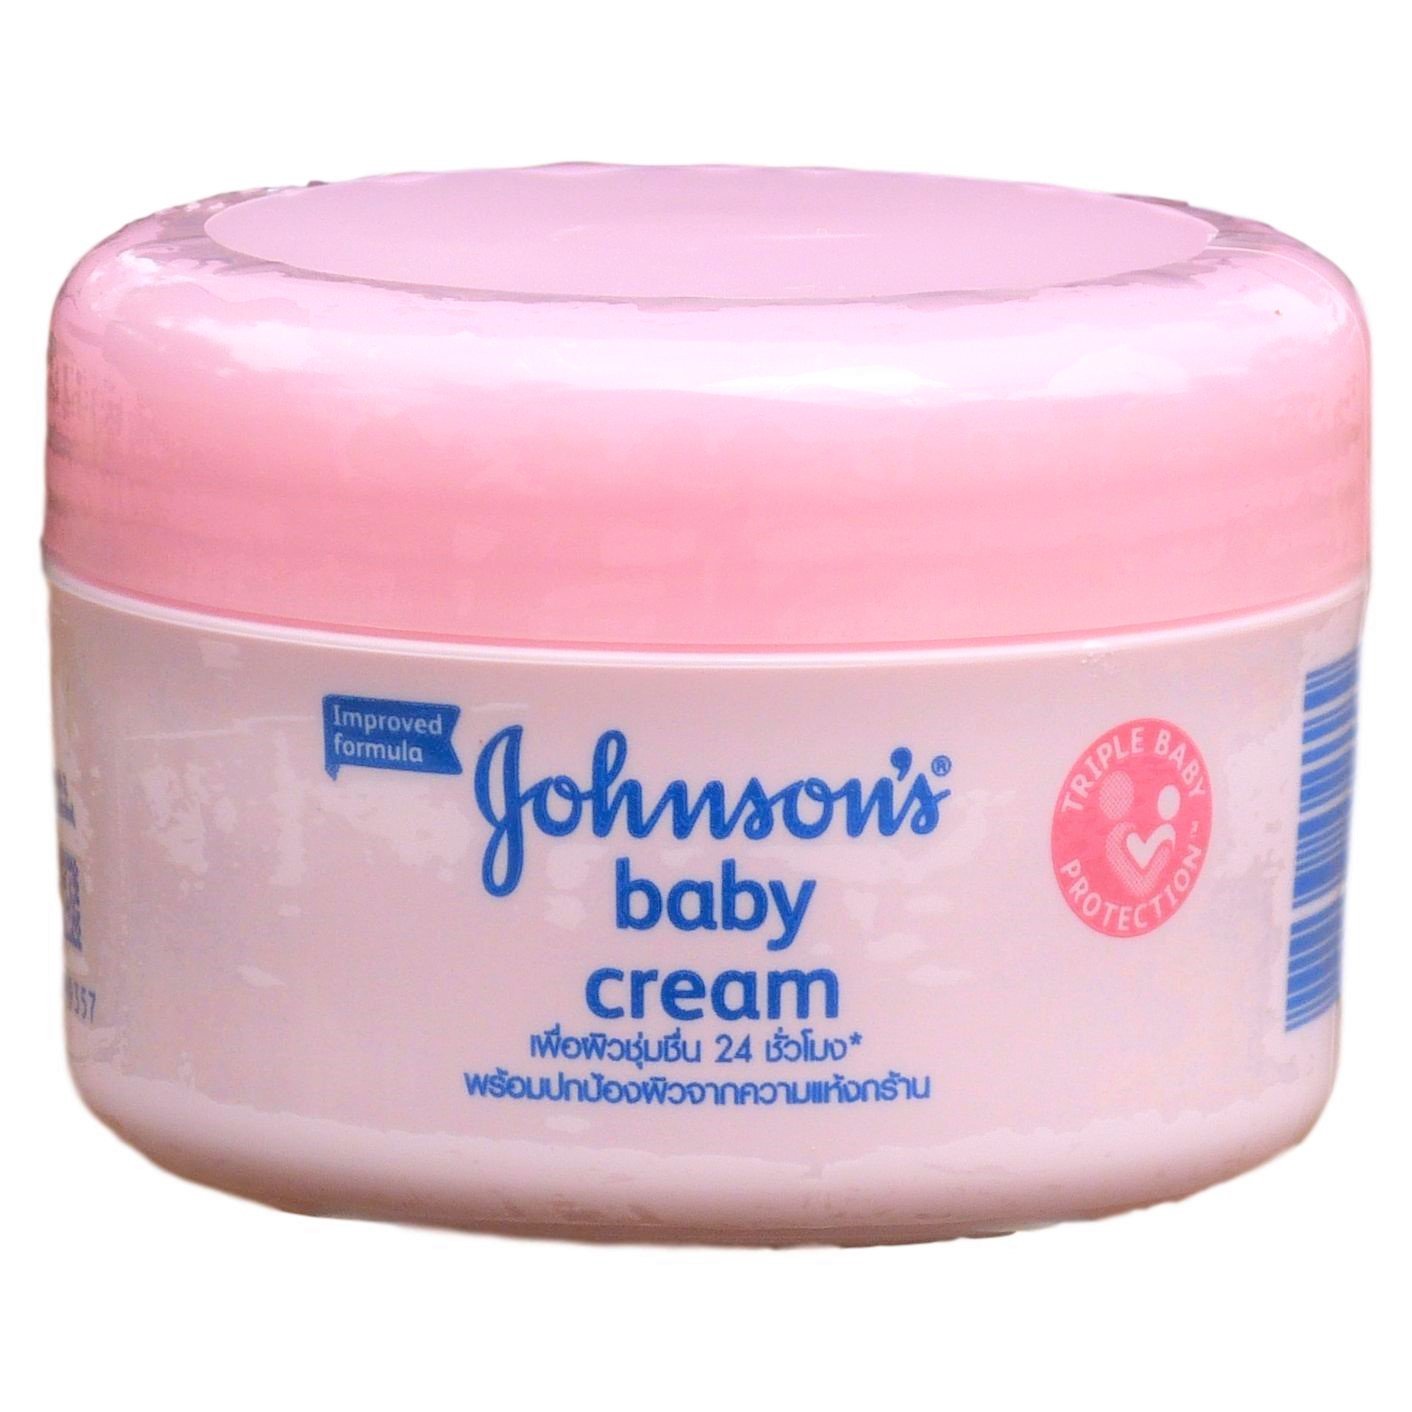 Gambar Johnson's Baby Cream